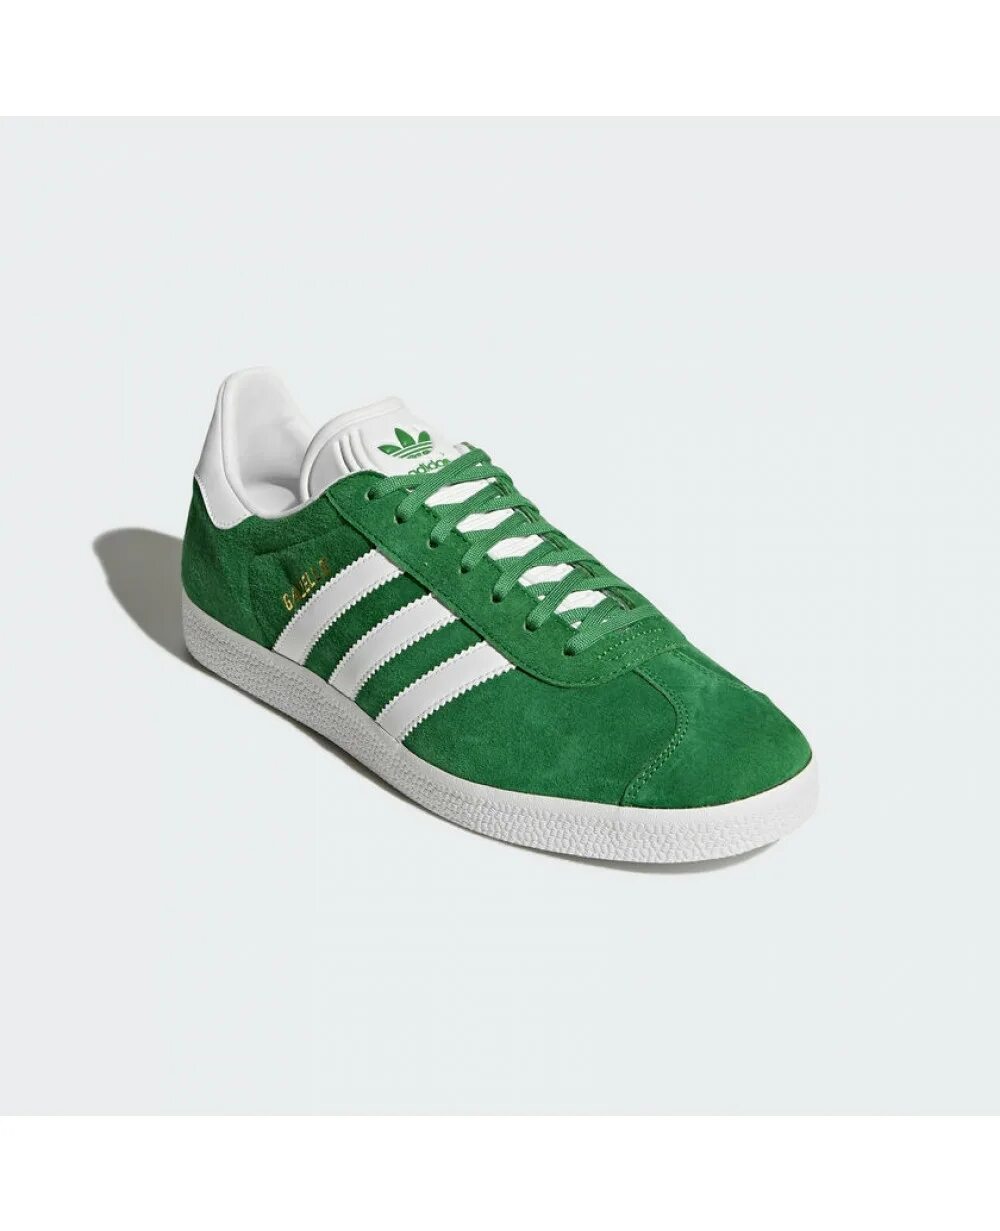 Кеды адидас зеленые. Кроссовки adidas Gazelle Green. Adidas Gazelle зеленые. Adidas Gazelle Green Original. Adidas кеды Gazelle зеленый.